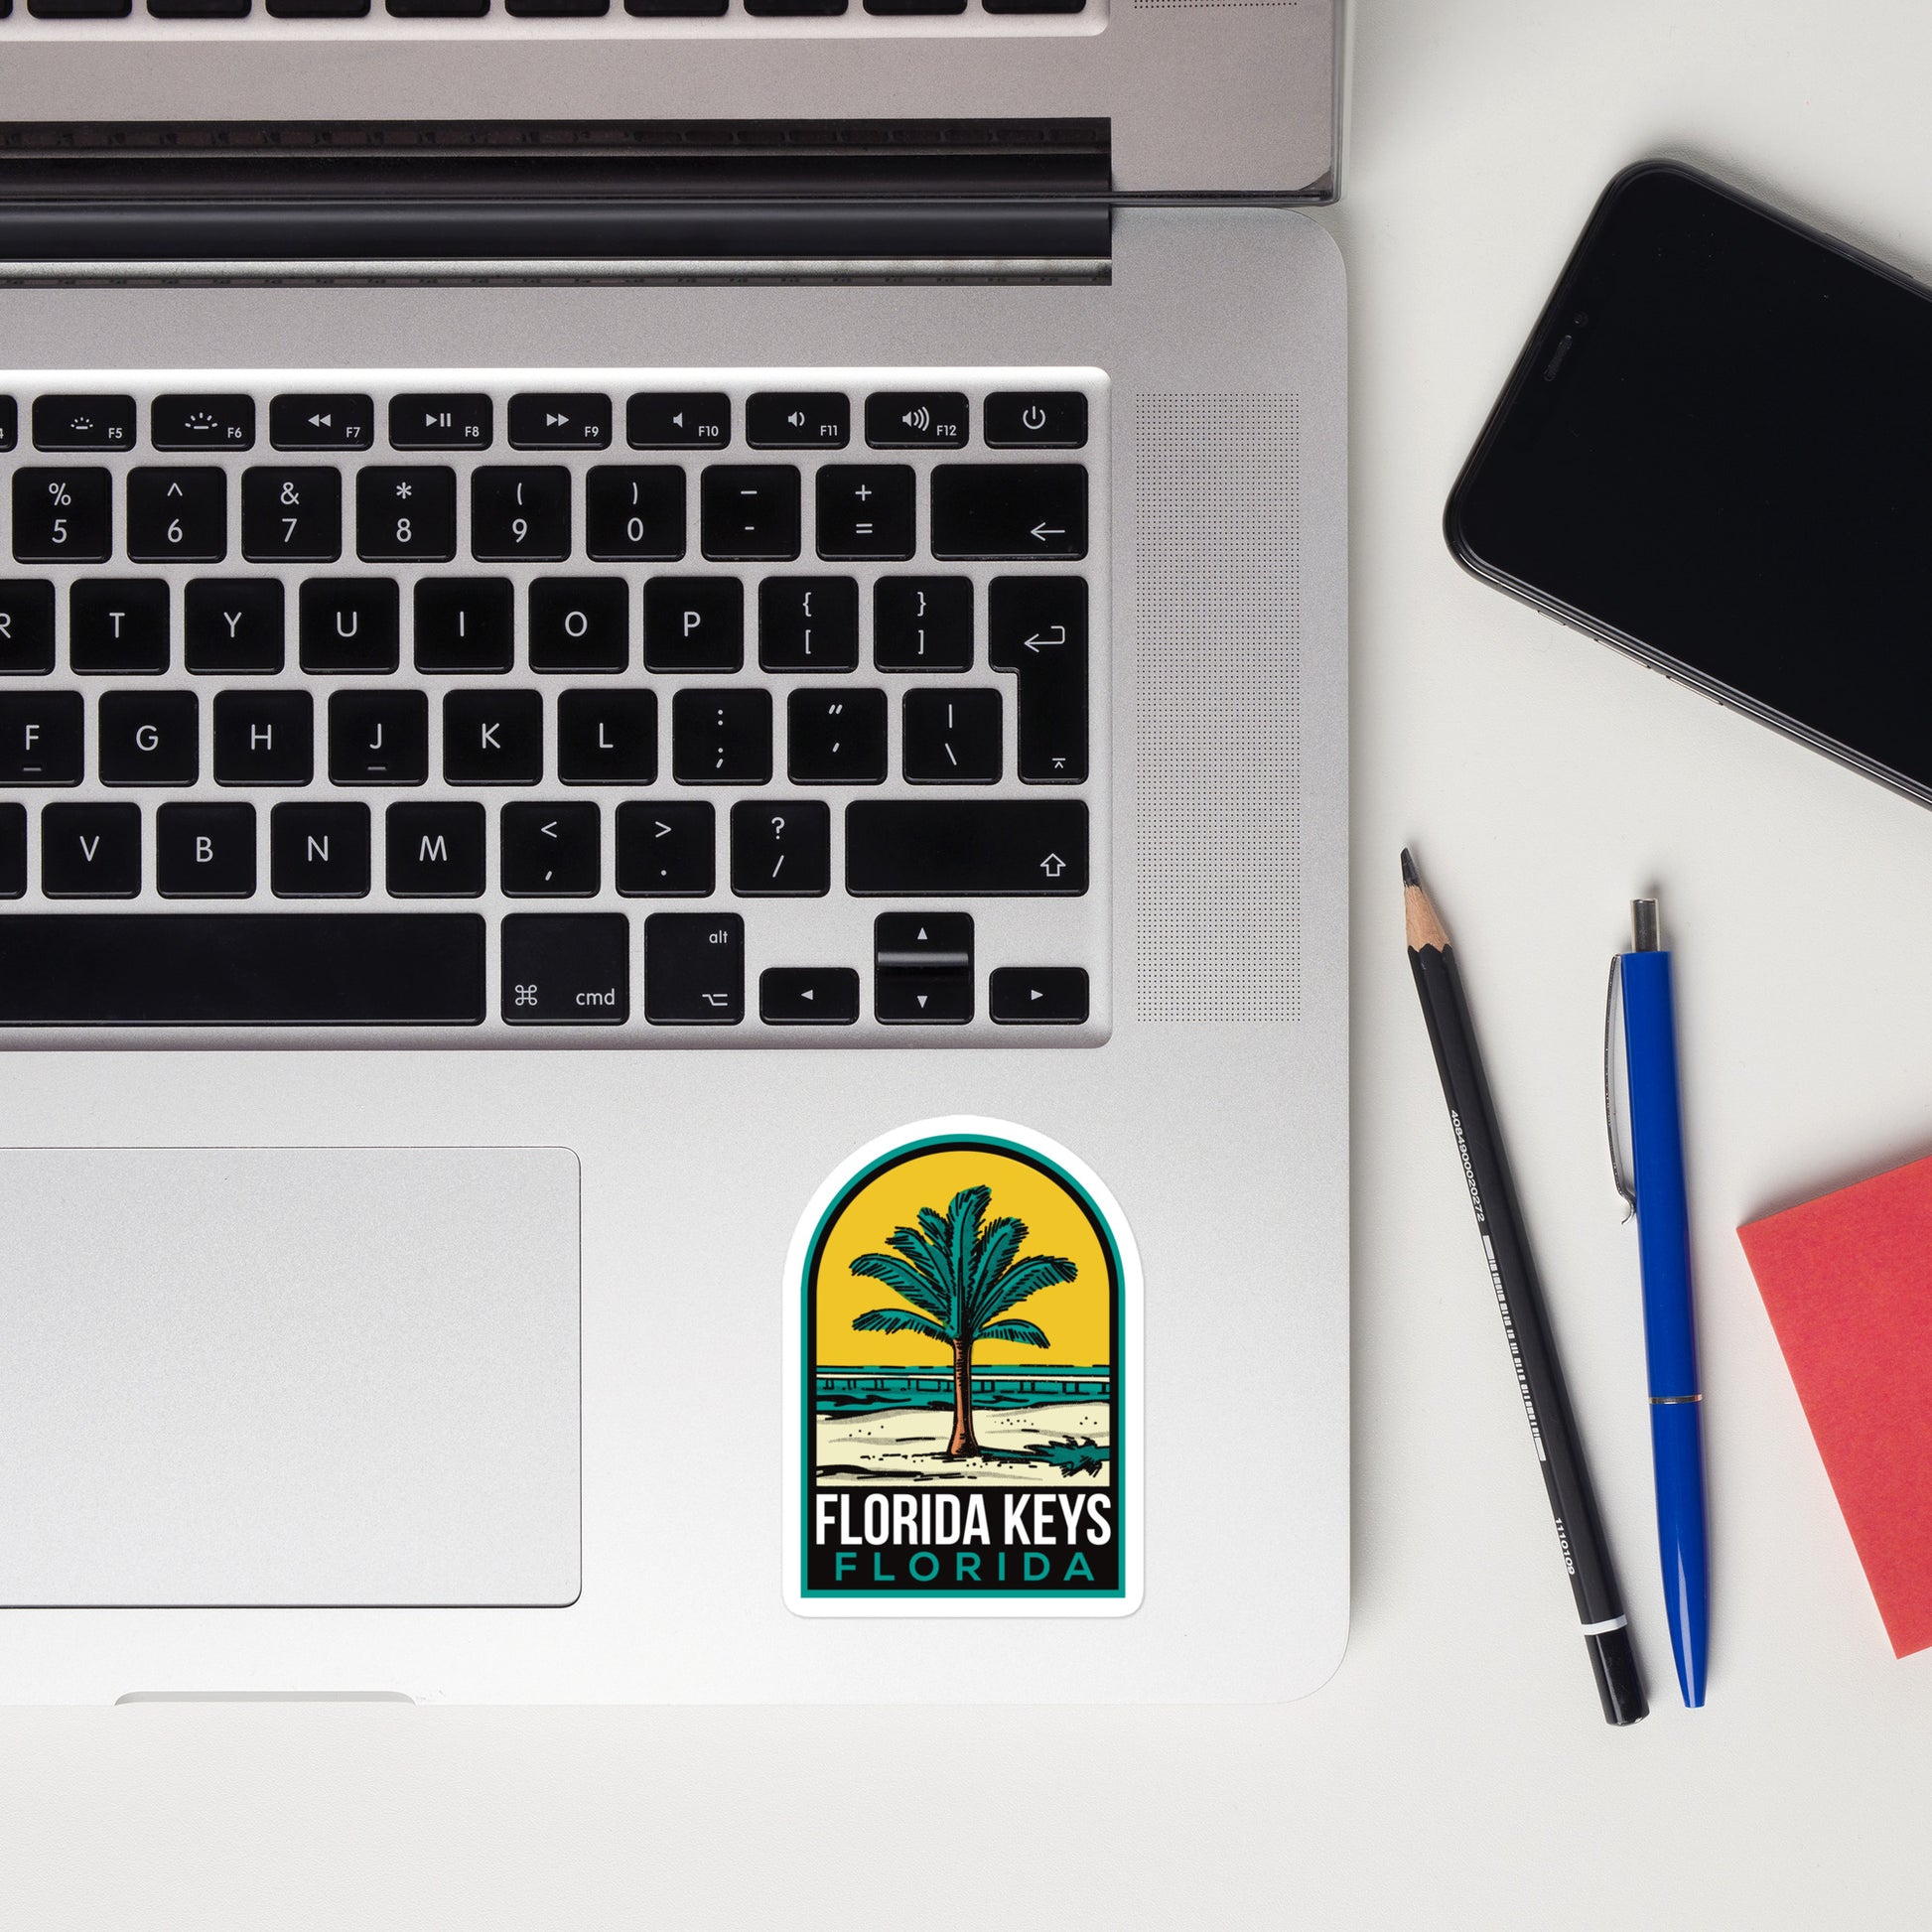 A sticker of the Florida Keys on a laptop